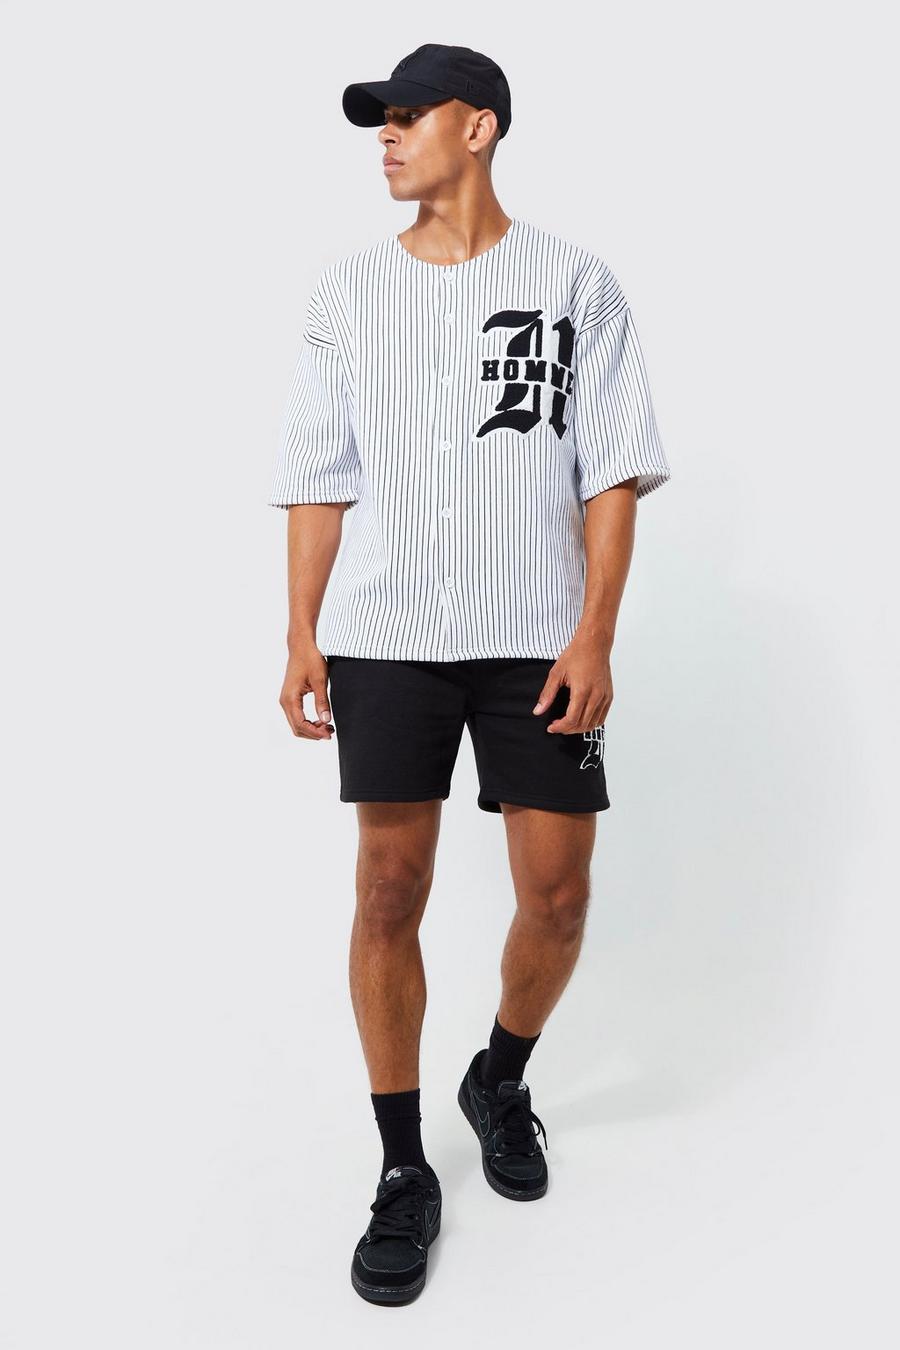 Black Homme Oversize kritstrecksrandig baseballskjorta och shorts